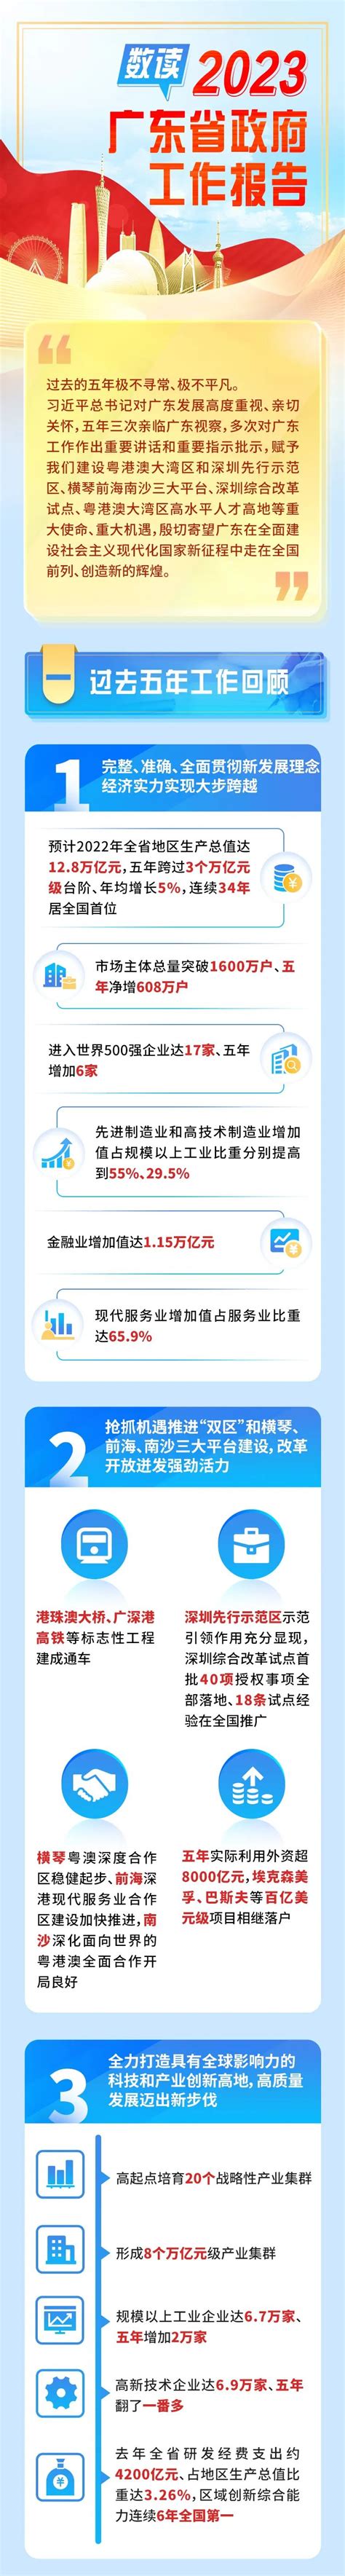 广州2020政府工作报告来了！全力保就业 今年要为企业减负超880亿！